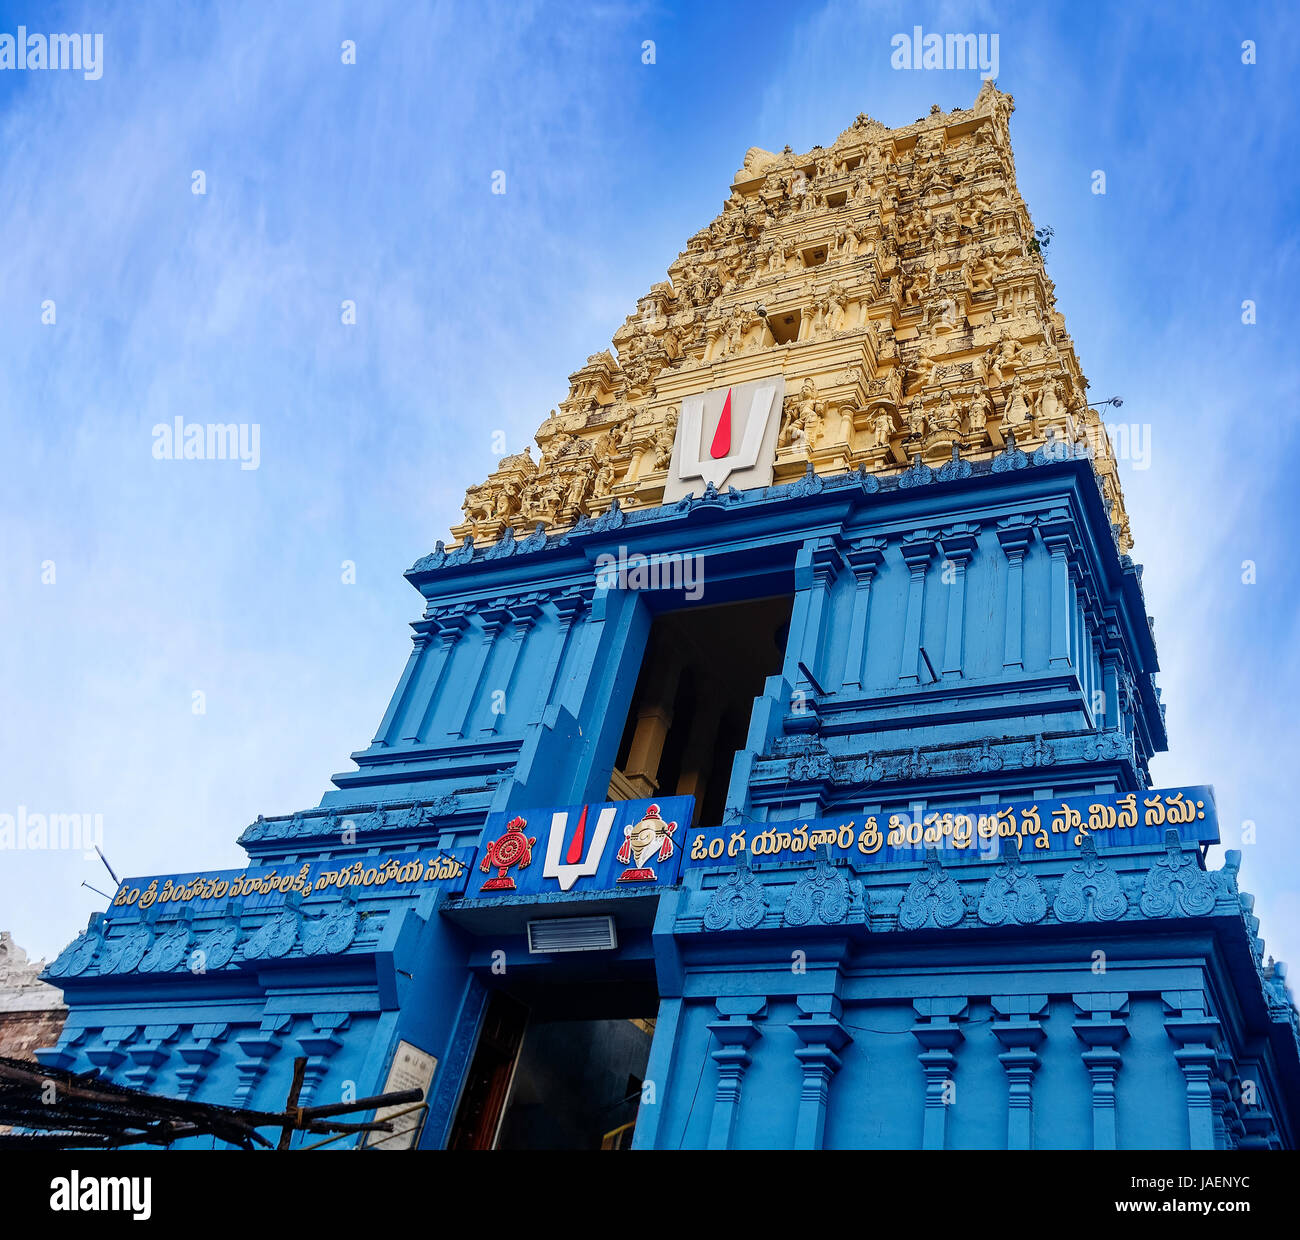 Simhadri o Simhachalam è un tempio indù situato in città Visakhapatnam sobborgo di Simhachalam in Andhra Pradesh, India. È dedicata al Signore Narasi Foto Stock